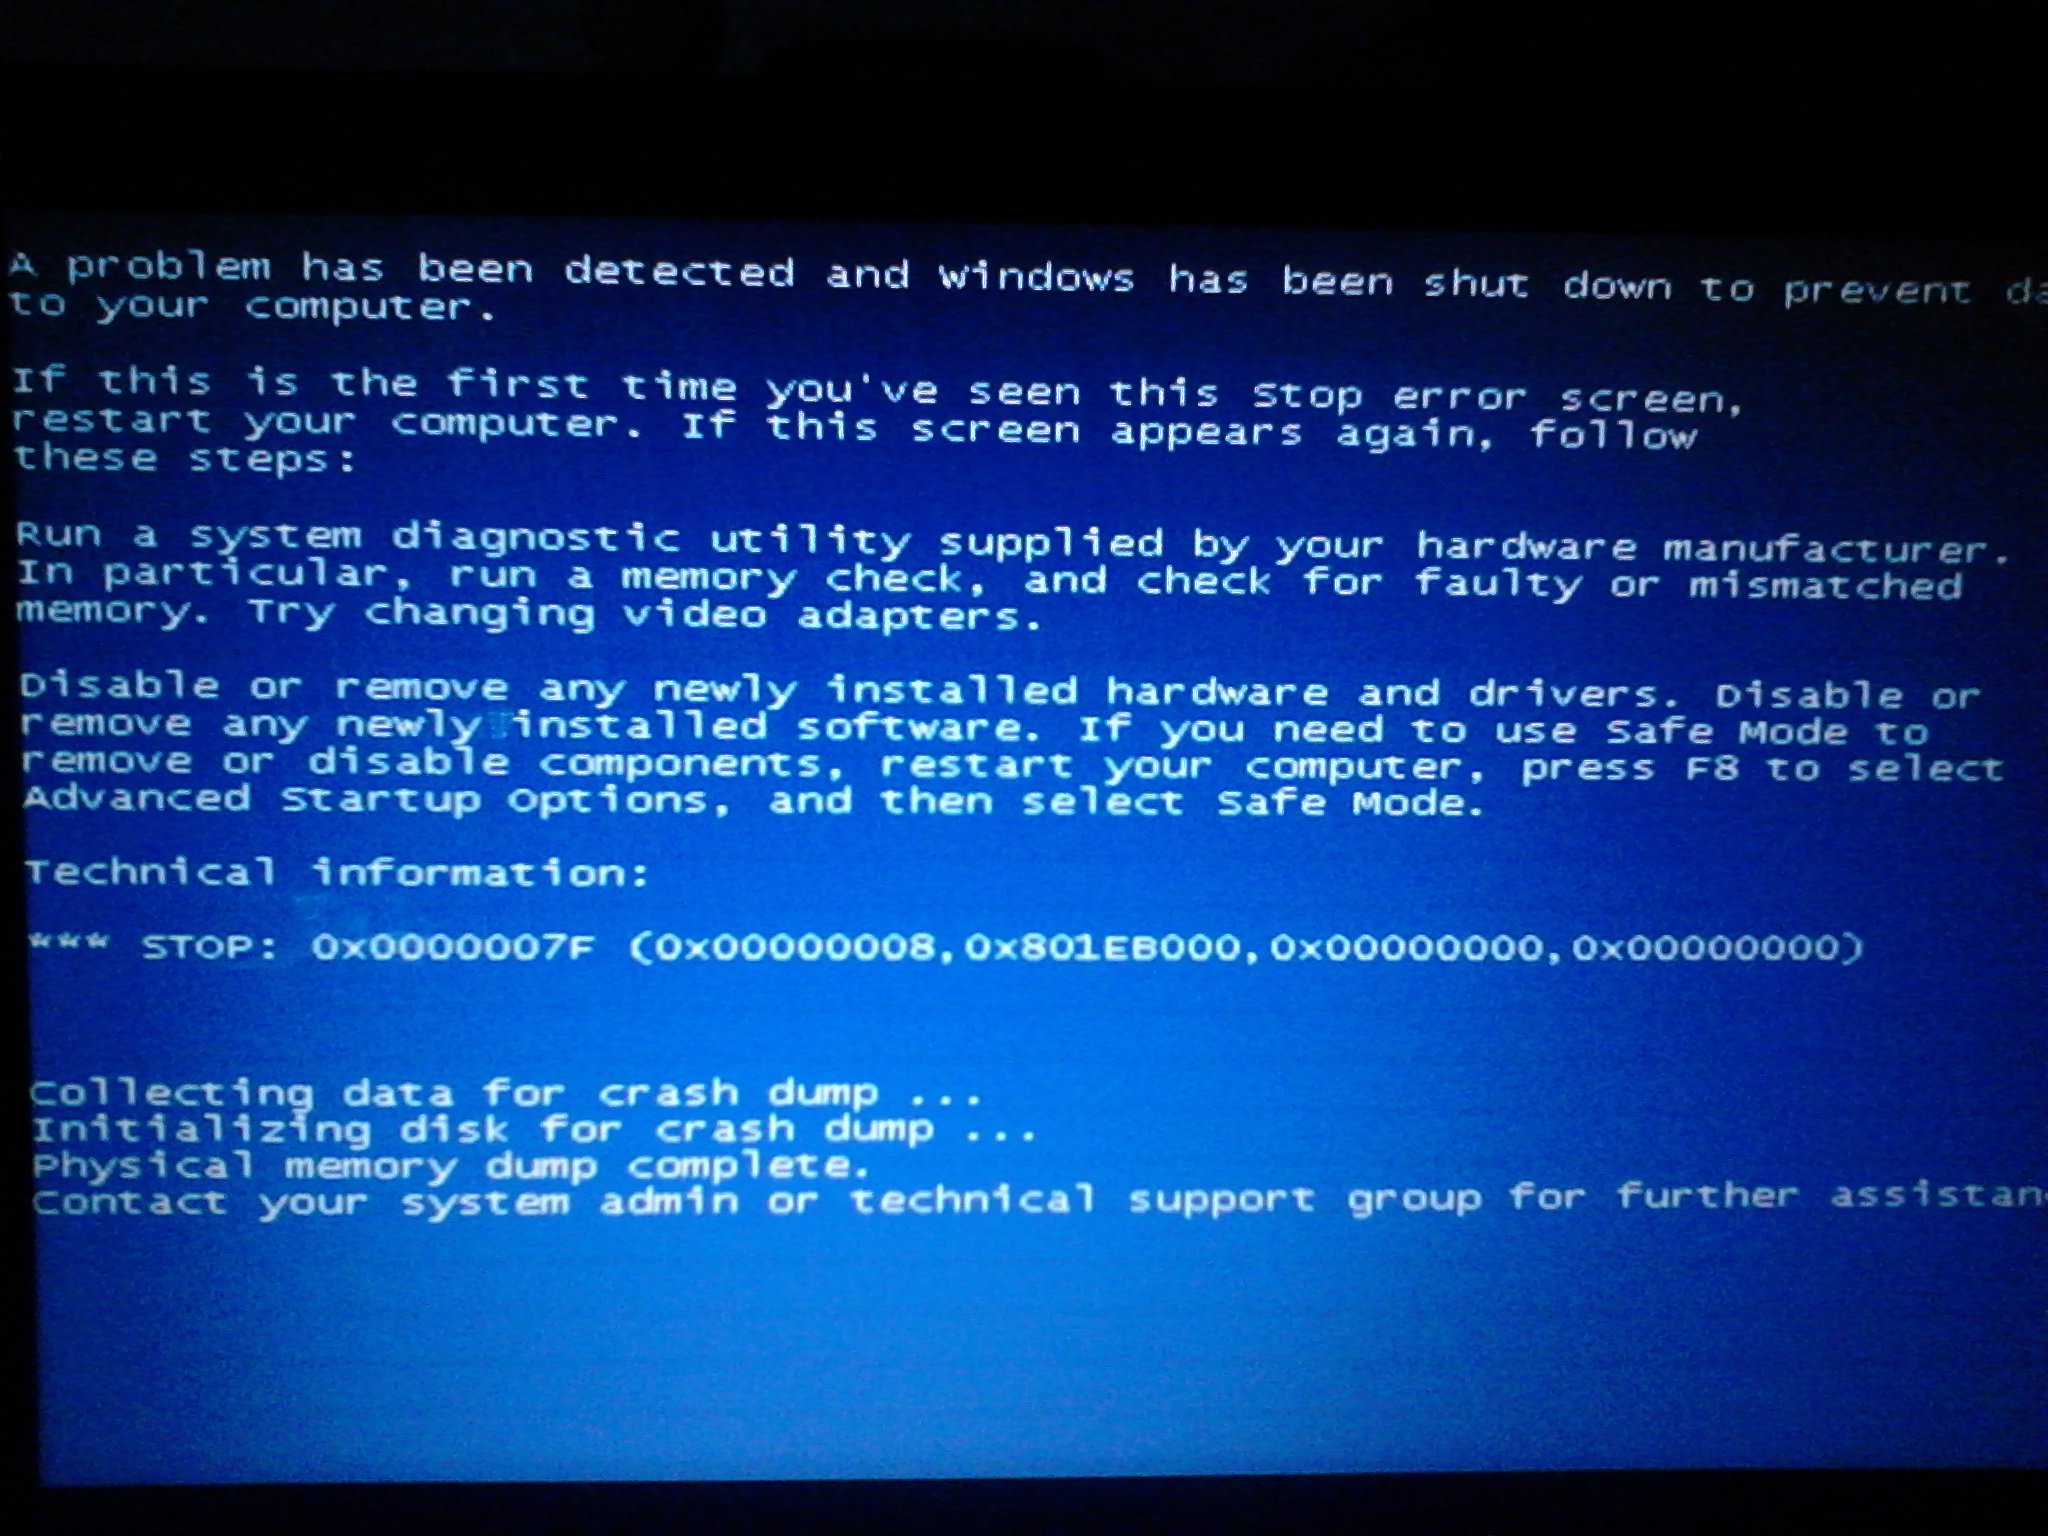 笔记本电脑蓝屏无法重启怎么解决。急急急急！！！！！！！！！